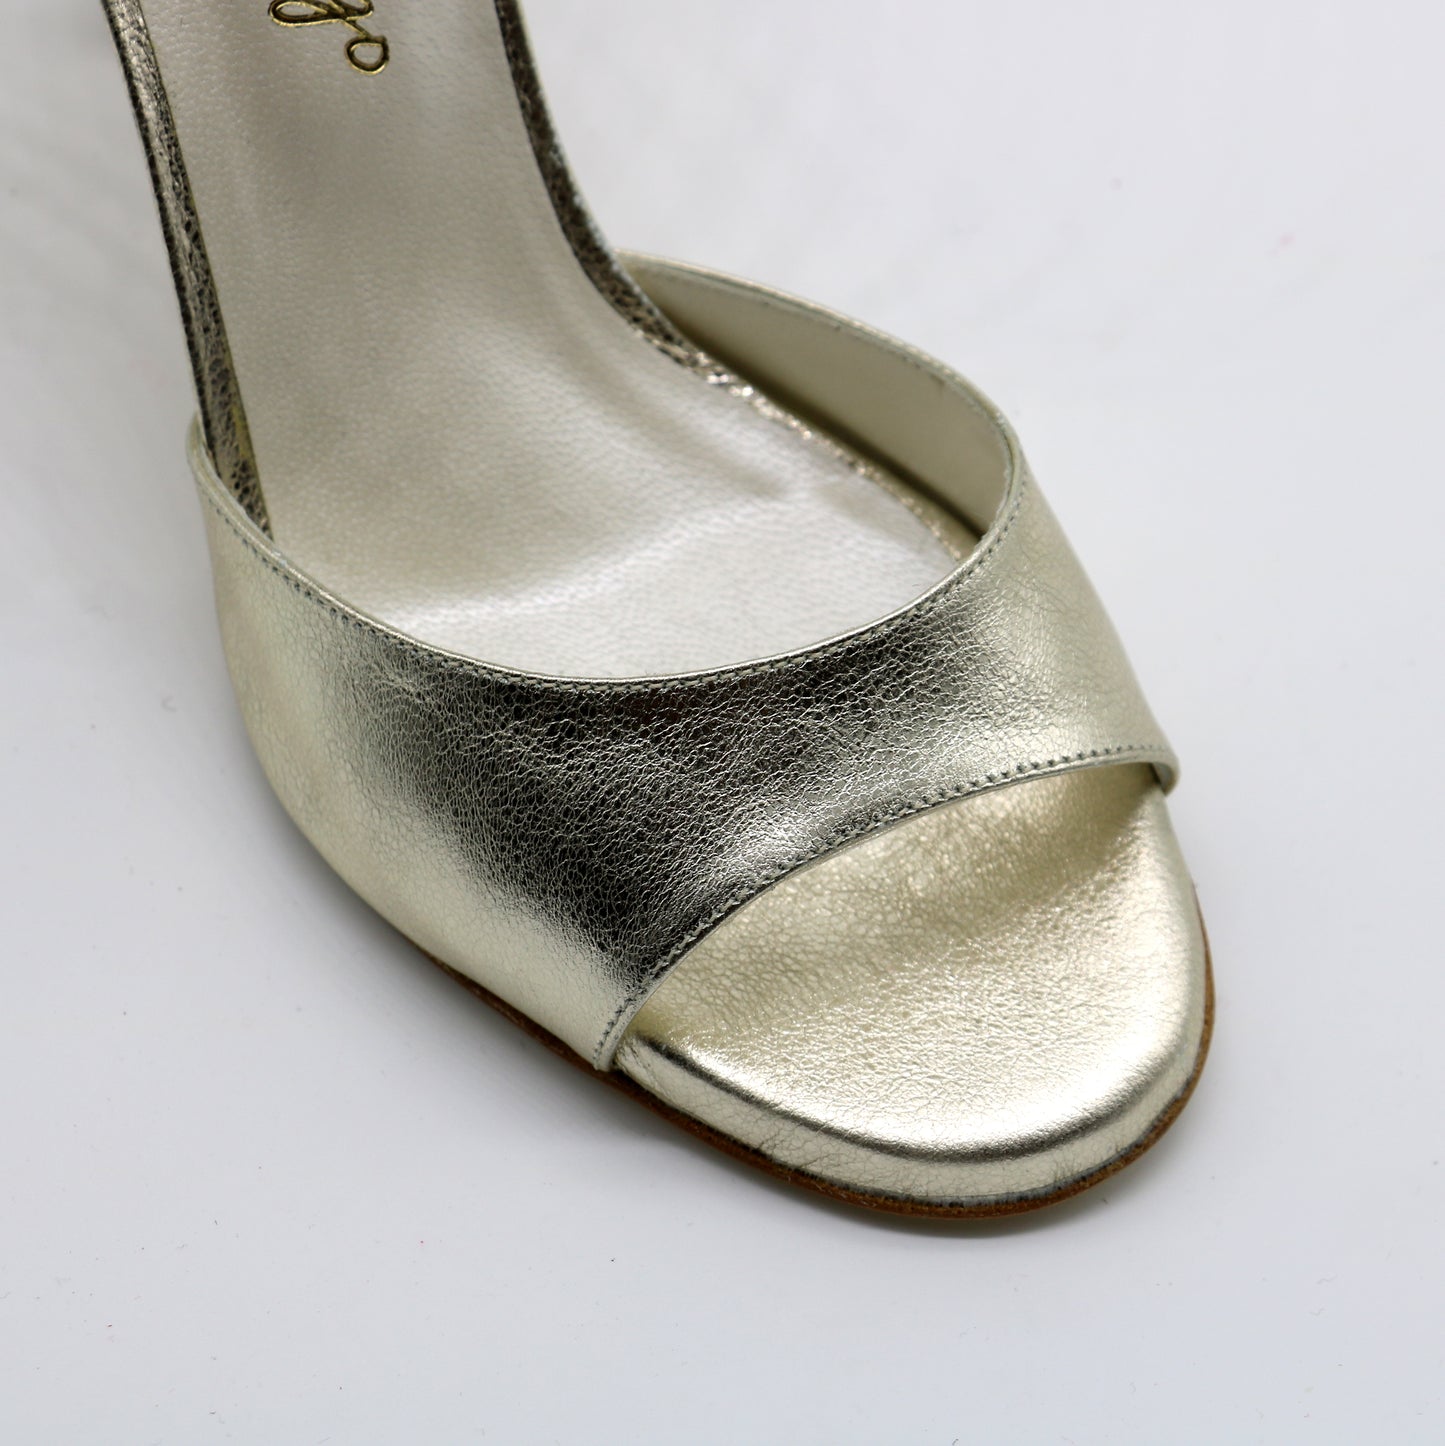 Picaflor Champagne Golden Shiny heels 8cm